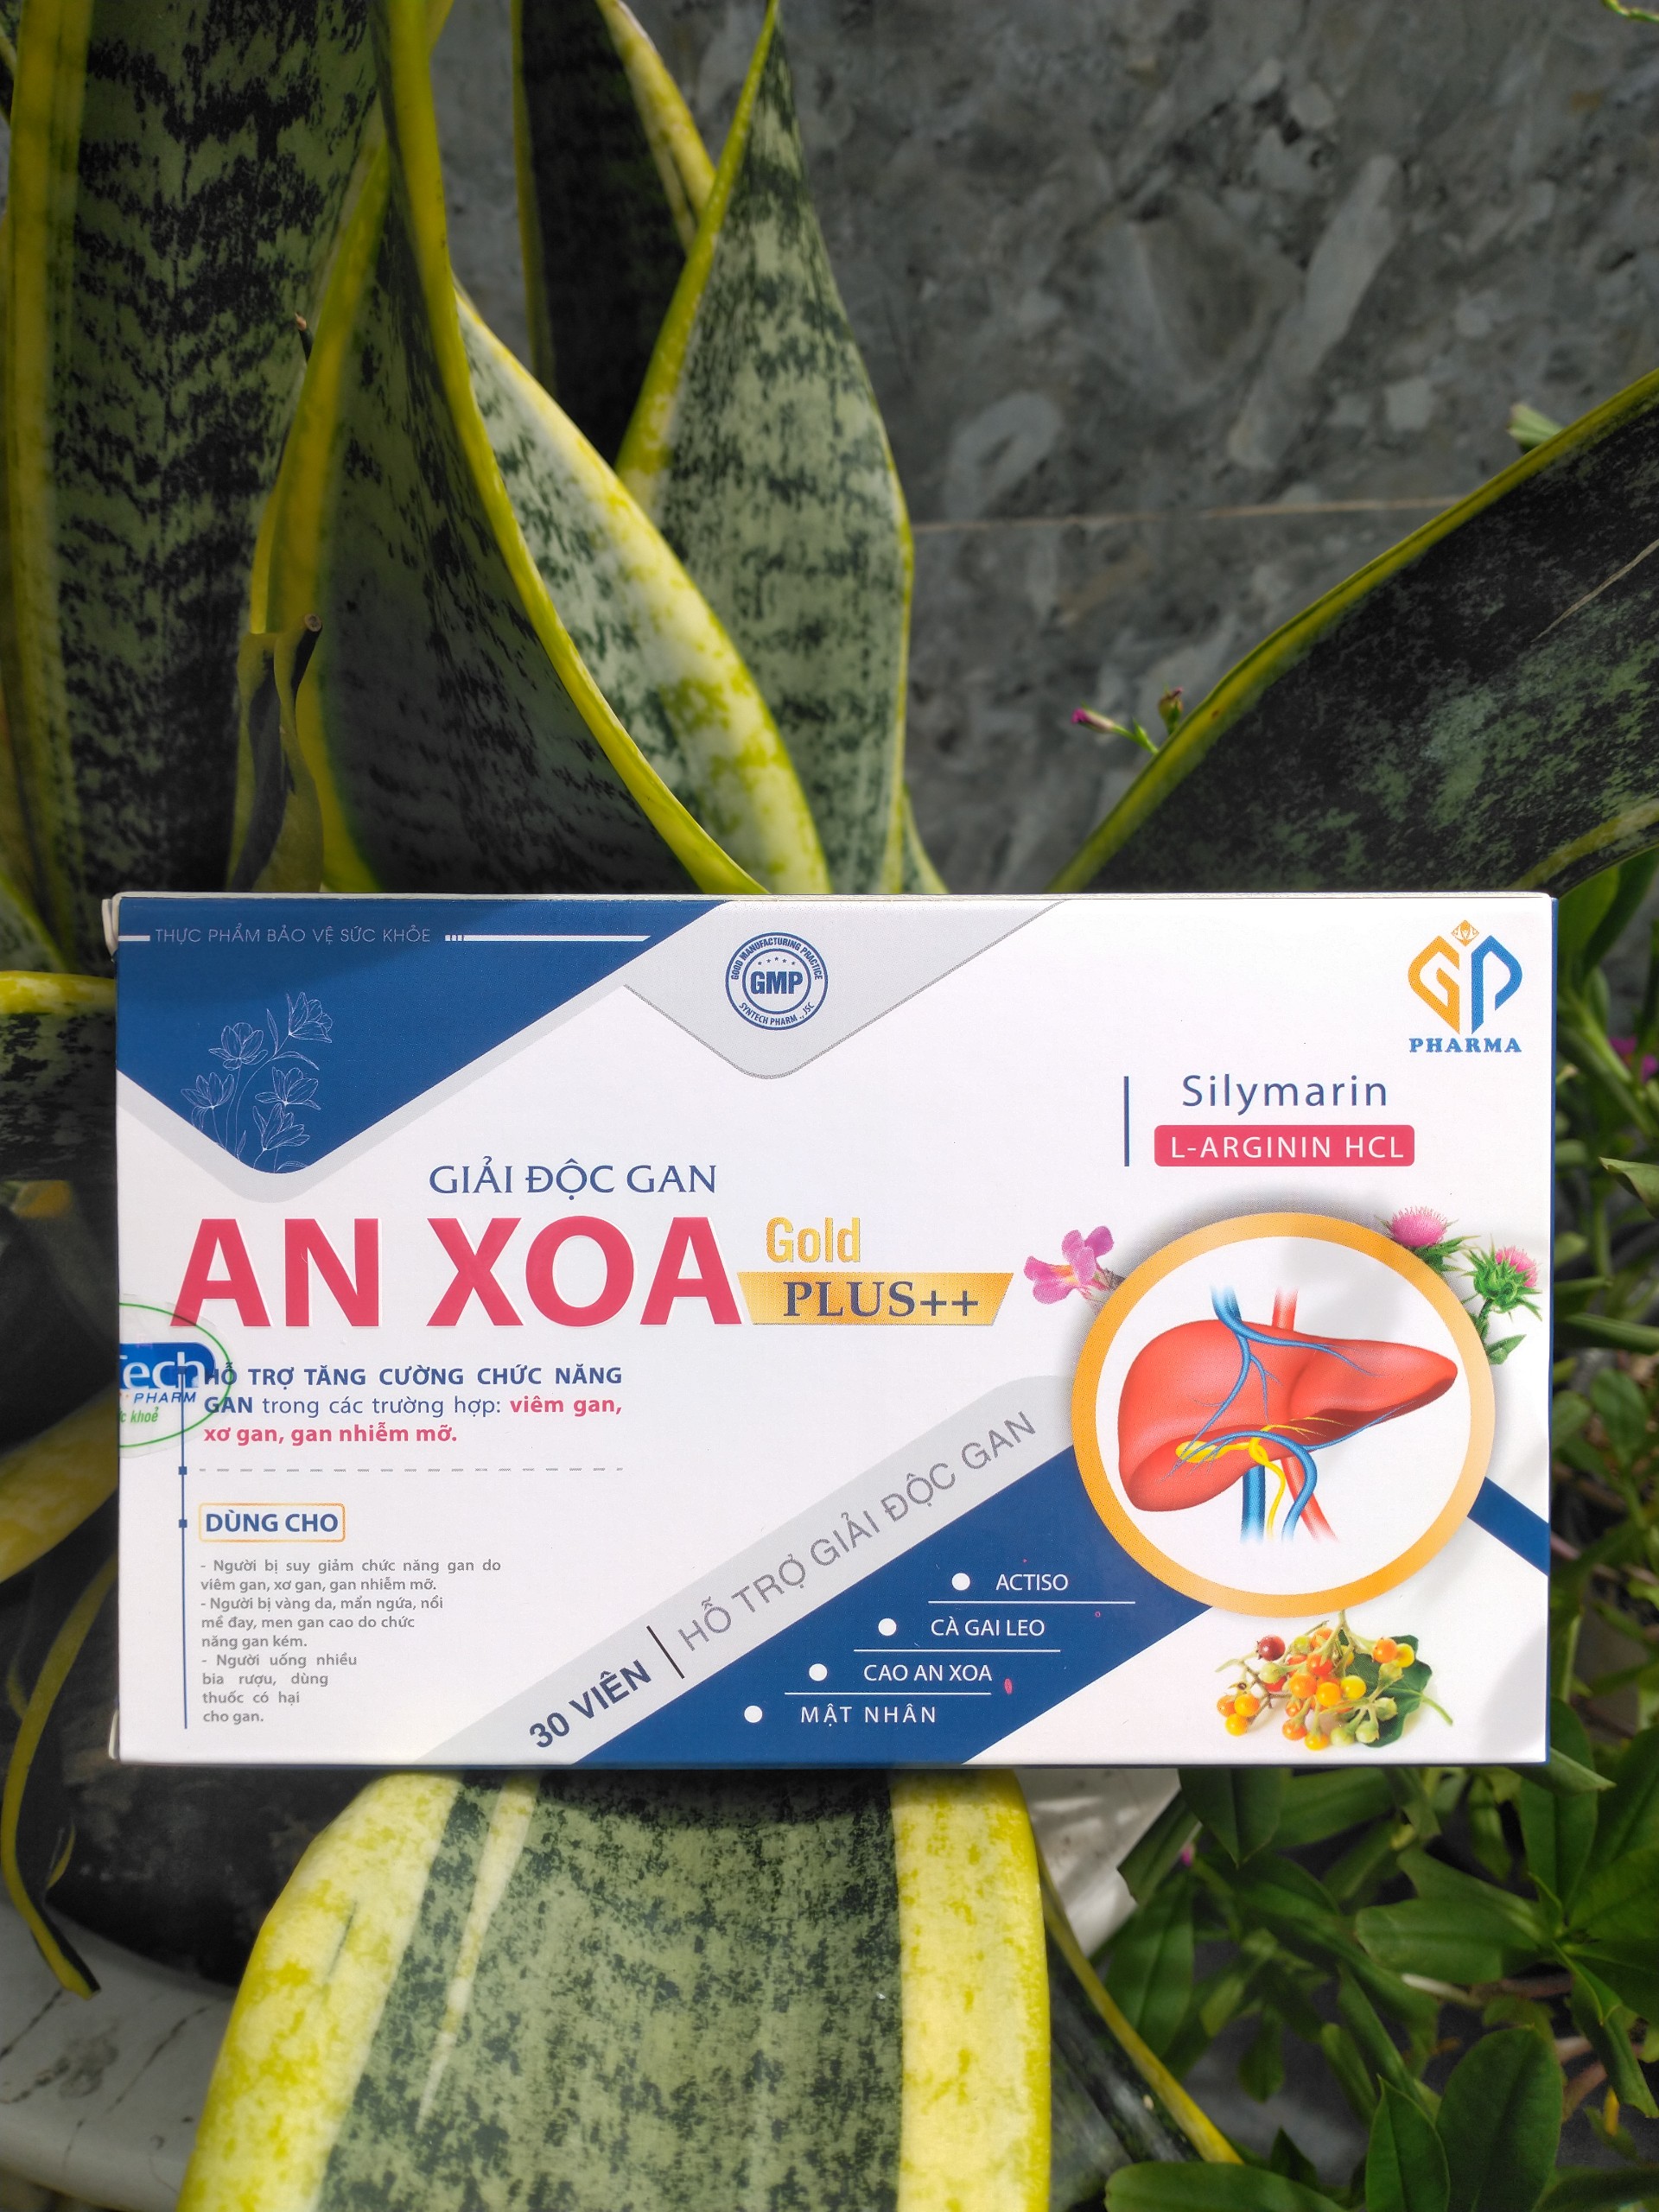 Giải độc gan An XOA gold-Hỗ trợ tăng cường chức năng gan, thanh nhiệt